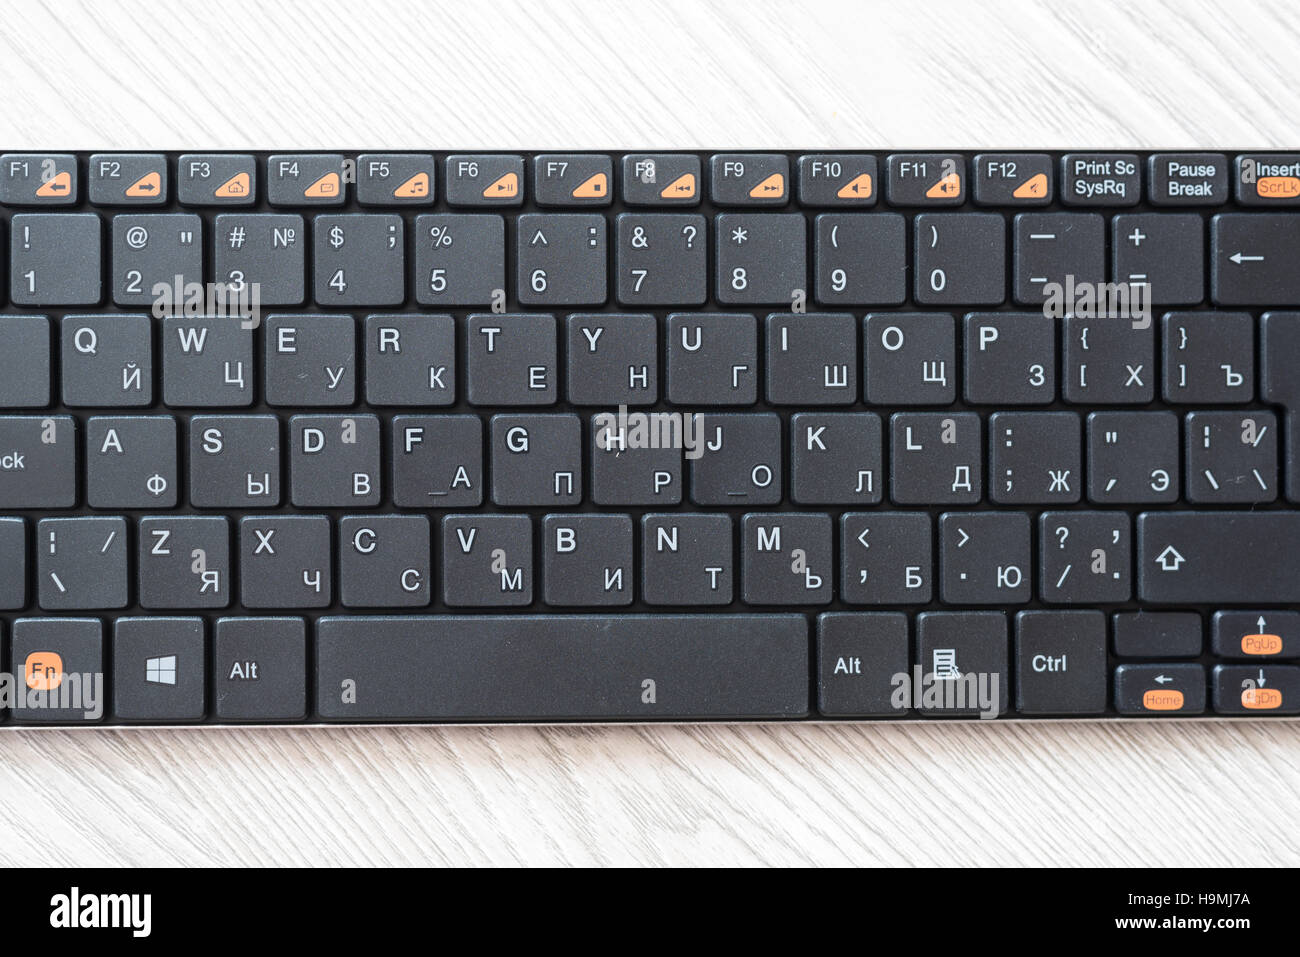 Nero con tastiera inglese e lettere in russo Foto Stock